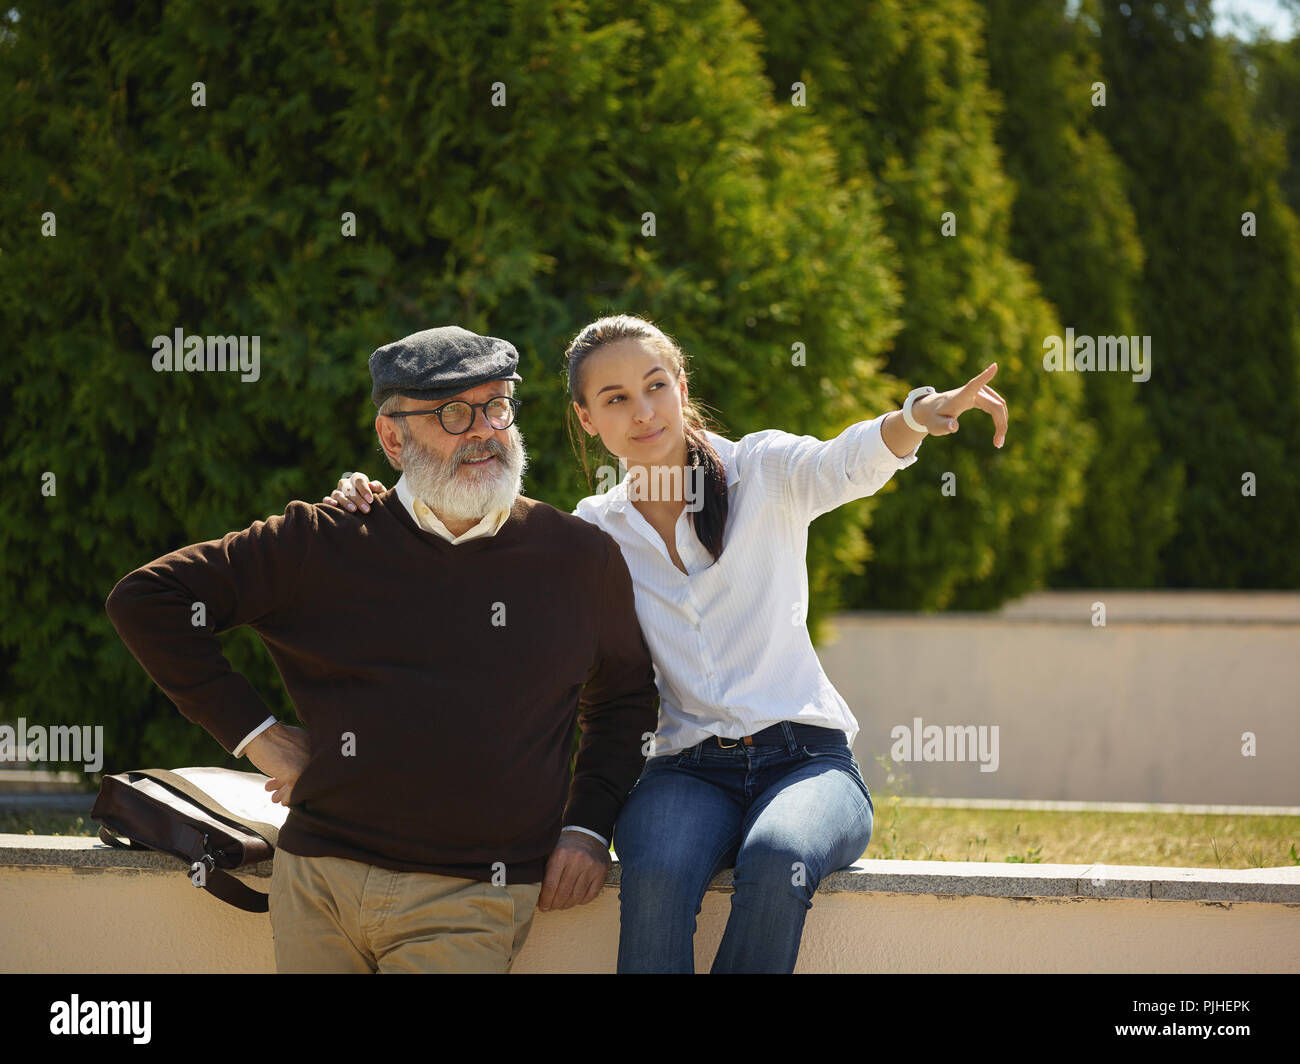 Aider quelqu'un que vous aimez. Portrait of young smiling girl embracing grand-père contre city park. communauté et de vie de la famille concept Banque D'Images